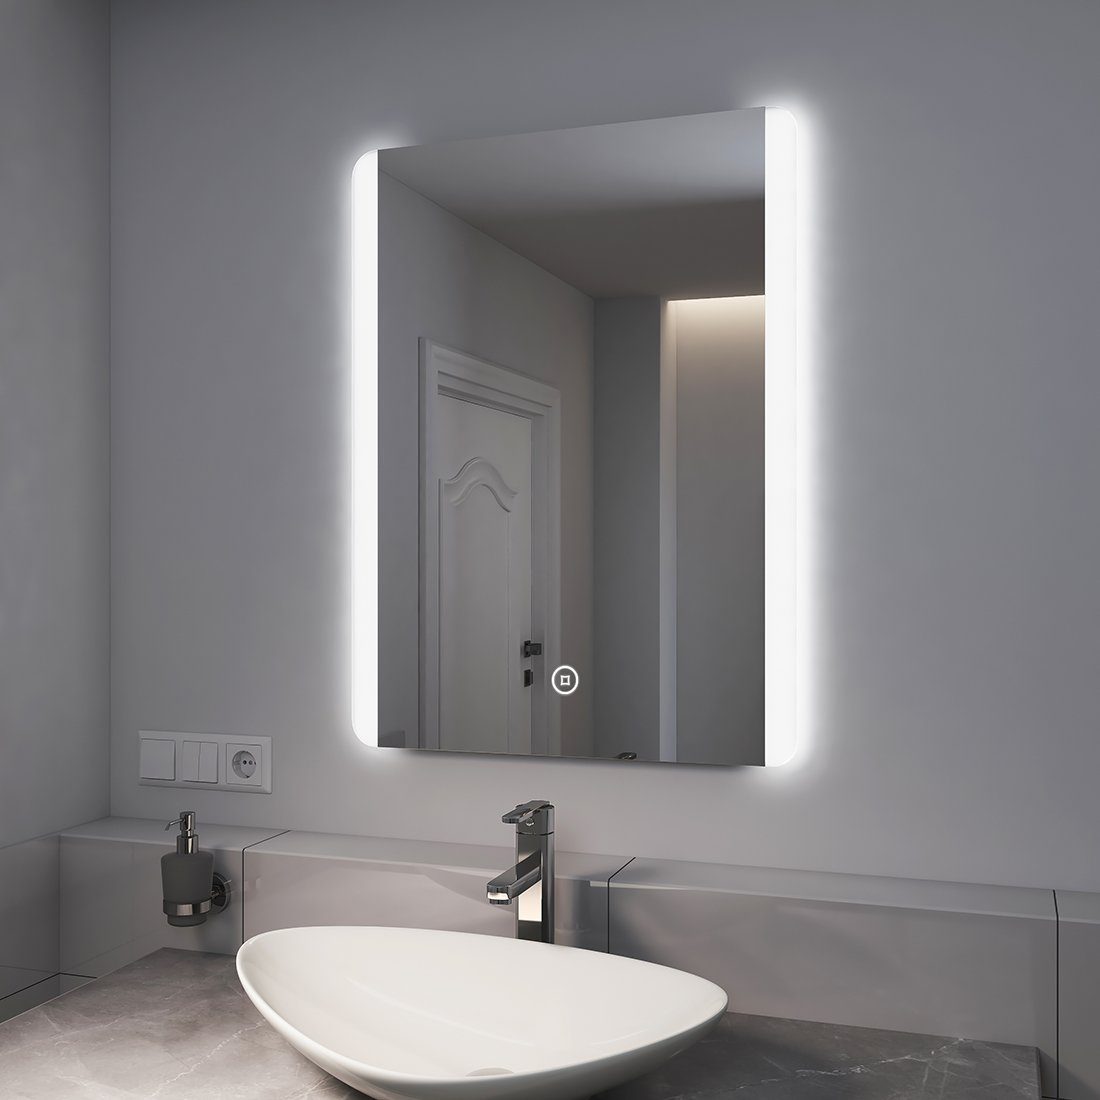 EMKE Badspiegel EMKE LED Badspiegel Badezimmerspiegel, mit Warmweißer oder kaltweiß Beleuchtung Modell 2